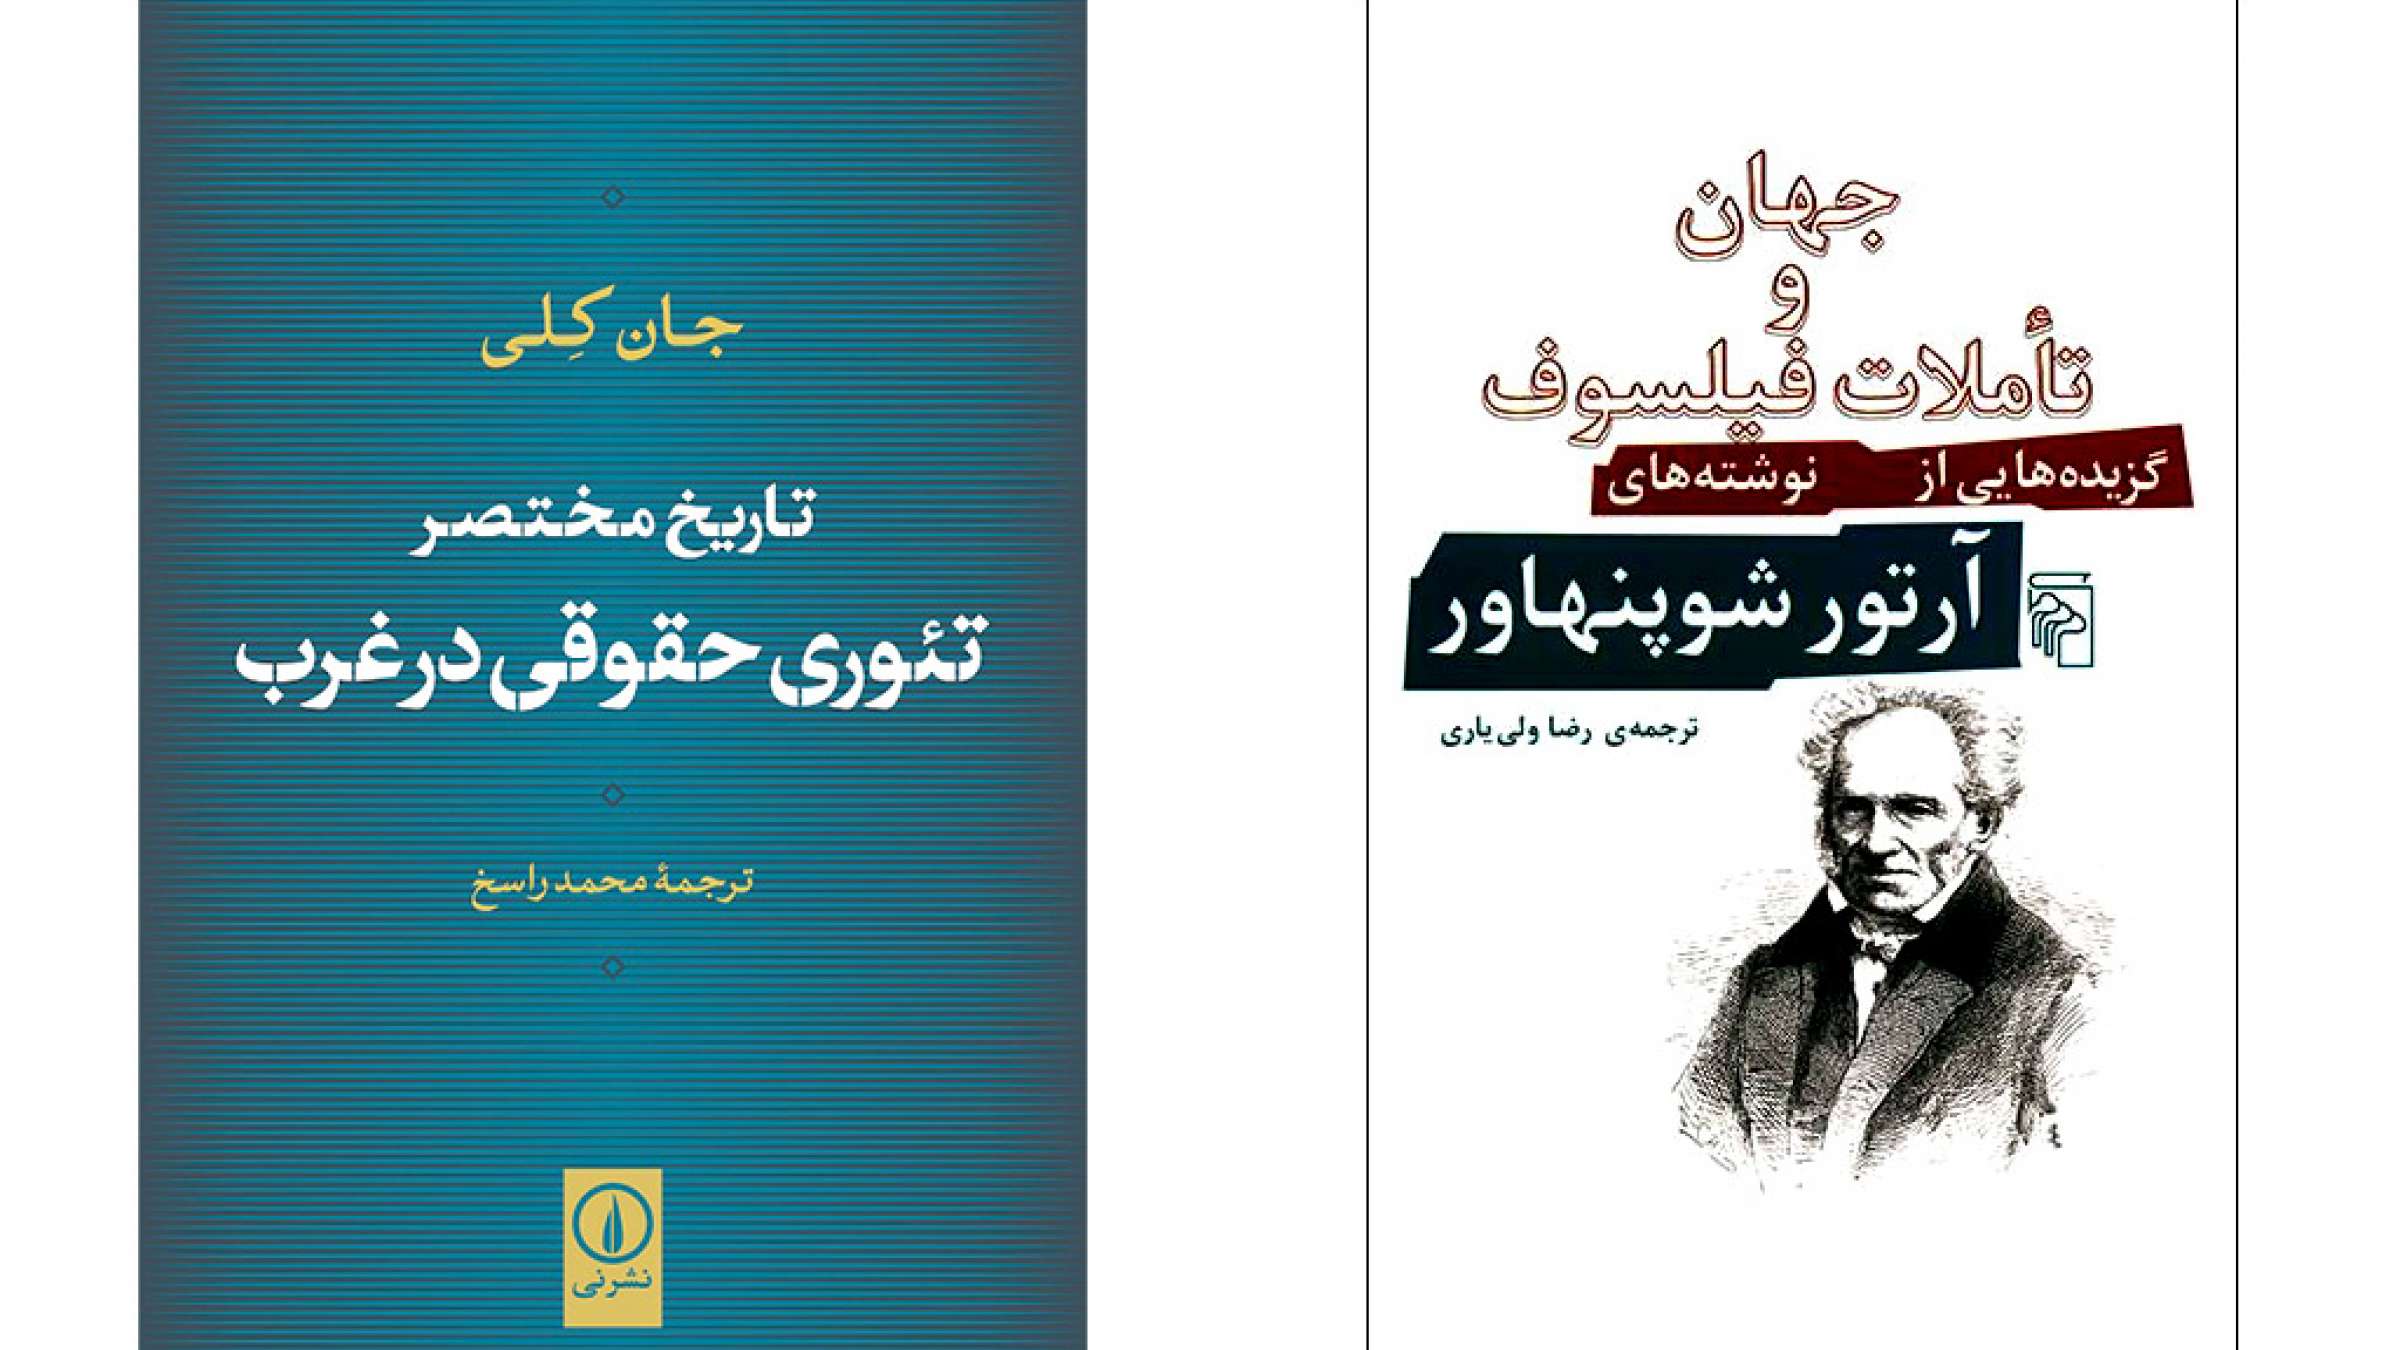 ادبیات-گل‌محمدی-کتاب-در-تابستان-داغ-تهران-جهان-و-تاملات-فیلسوف-تئوری-حقوقی-در-عرب